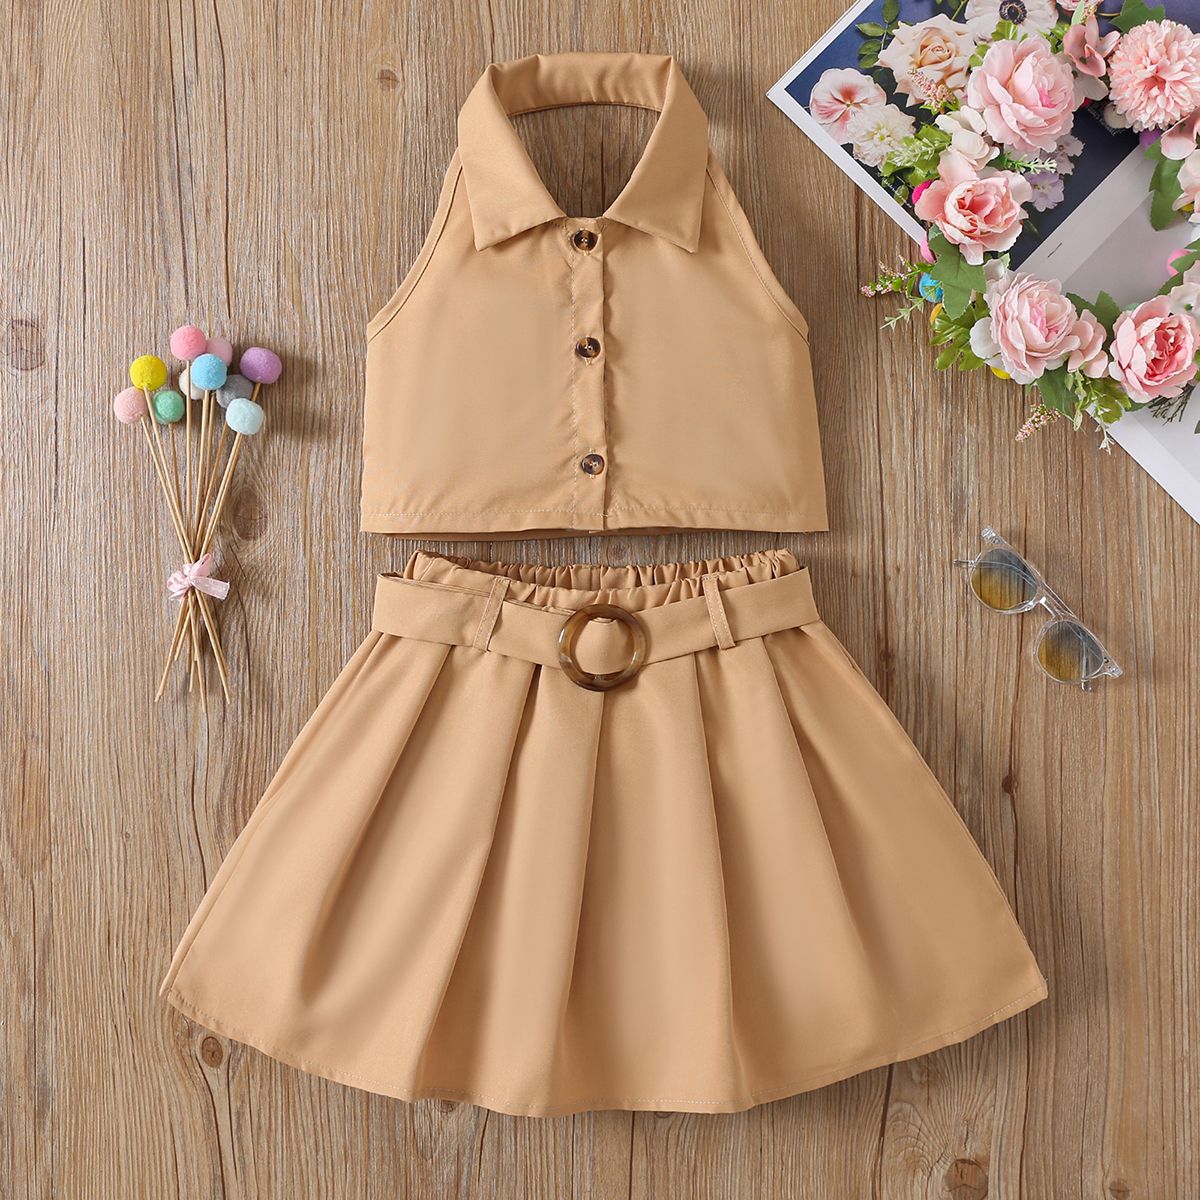 Girls' 2pcs Brown Halter Short Skirt Set - Avant-garde Style